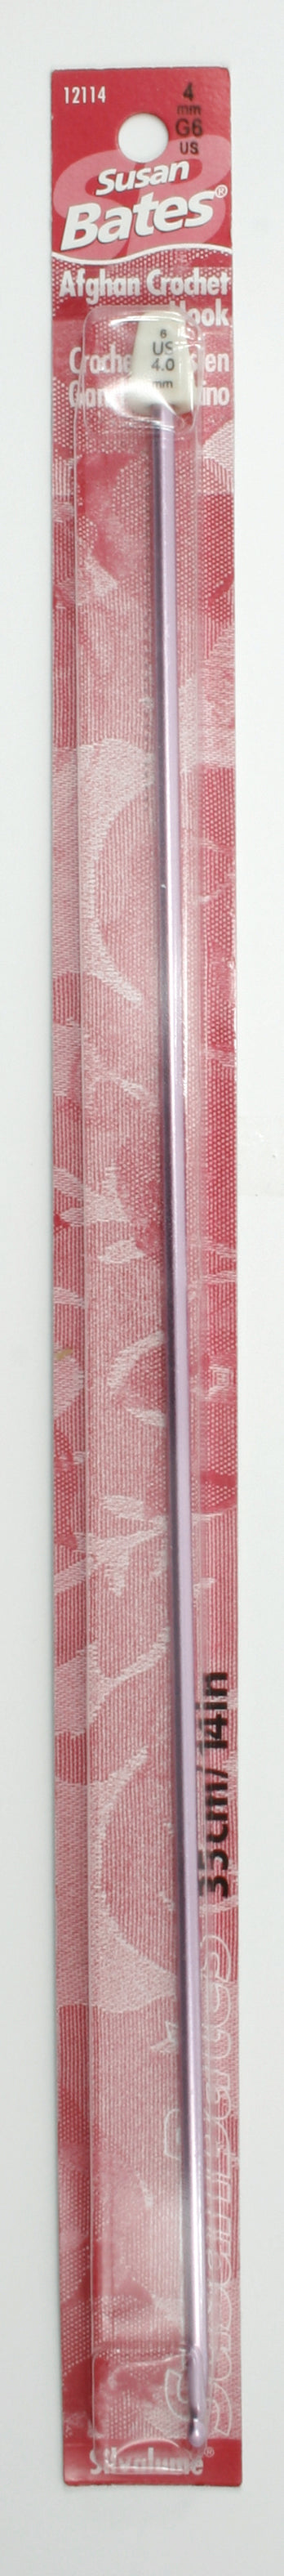 KNIT PICKS Rainbow Wood Crochet Hooks 15cm (6) - 6mm/US J-10 – Fabricville